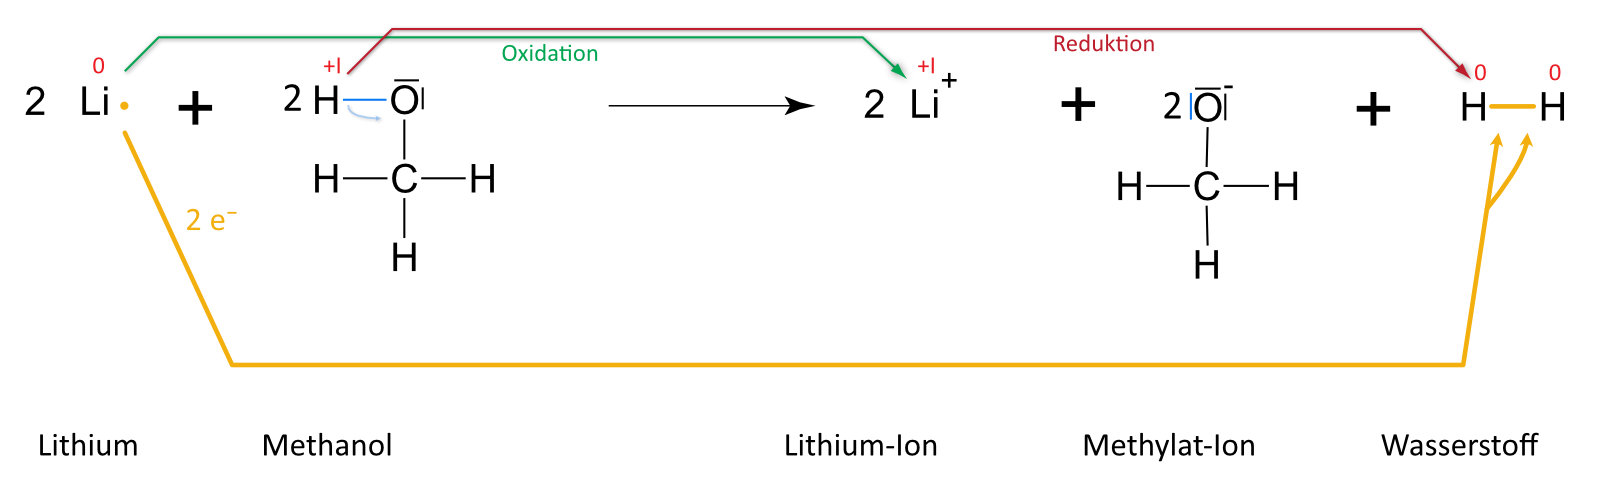 05 01 04 ta Reaktionsgleichung Lithium und Methanol